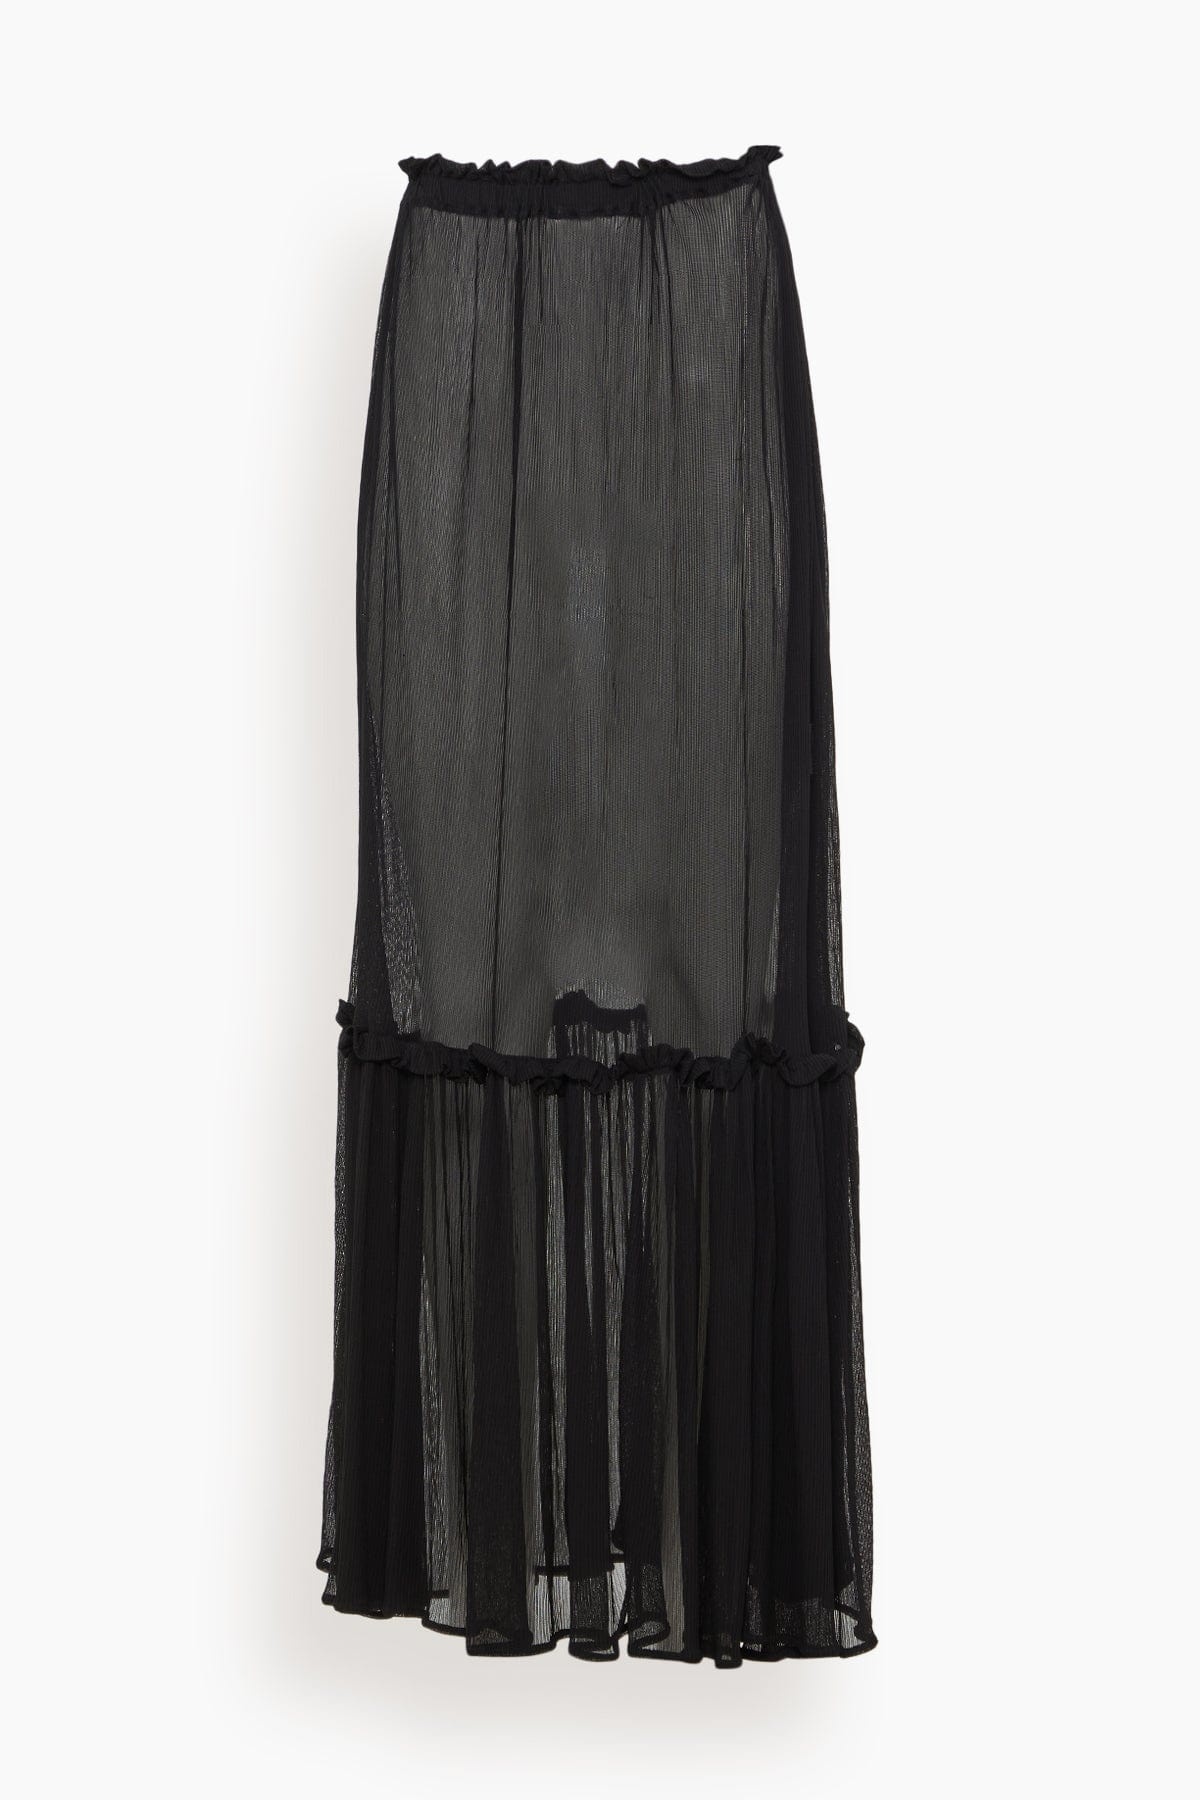 Sheer Zephyr Skirt in Black - 1